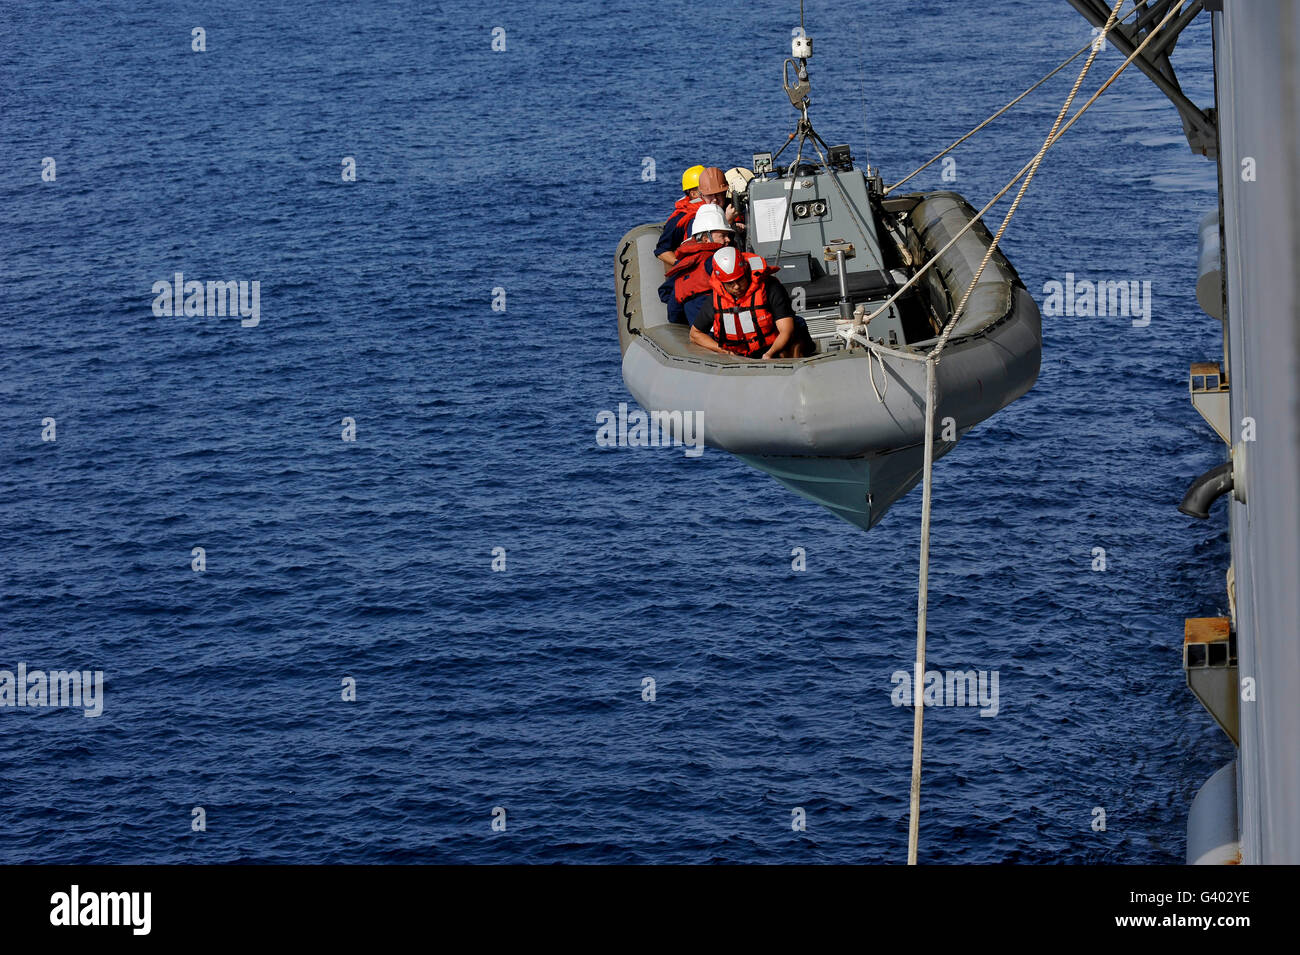 Los marineros bajar una embarcación inflable de casco rígido. Foto de stock